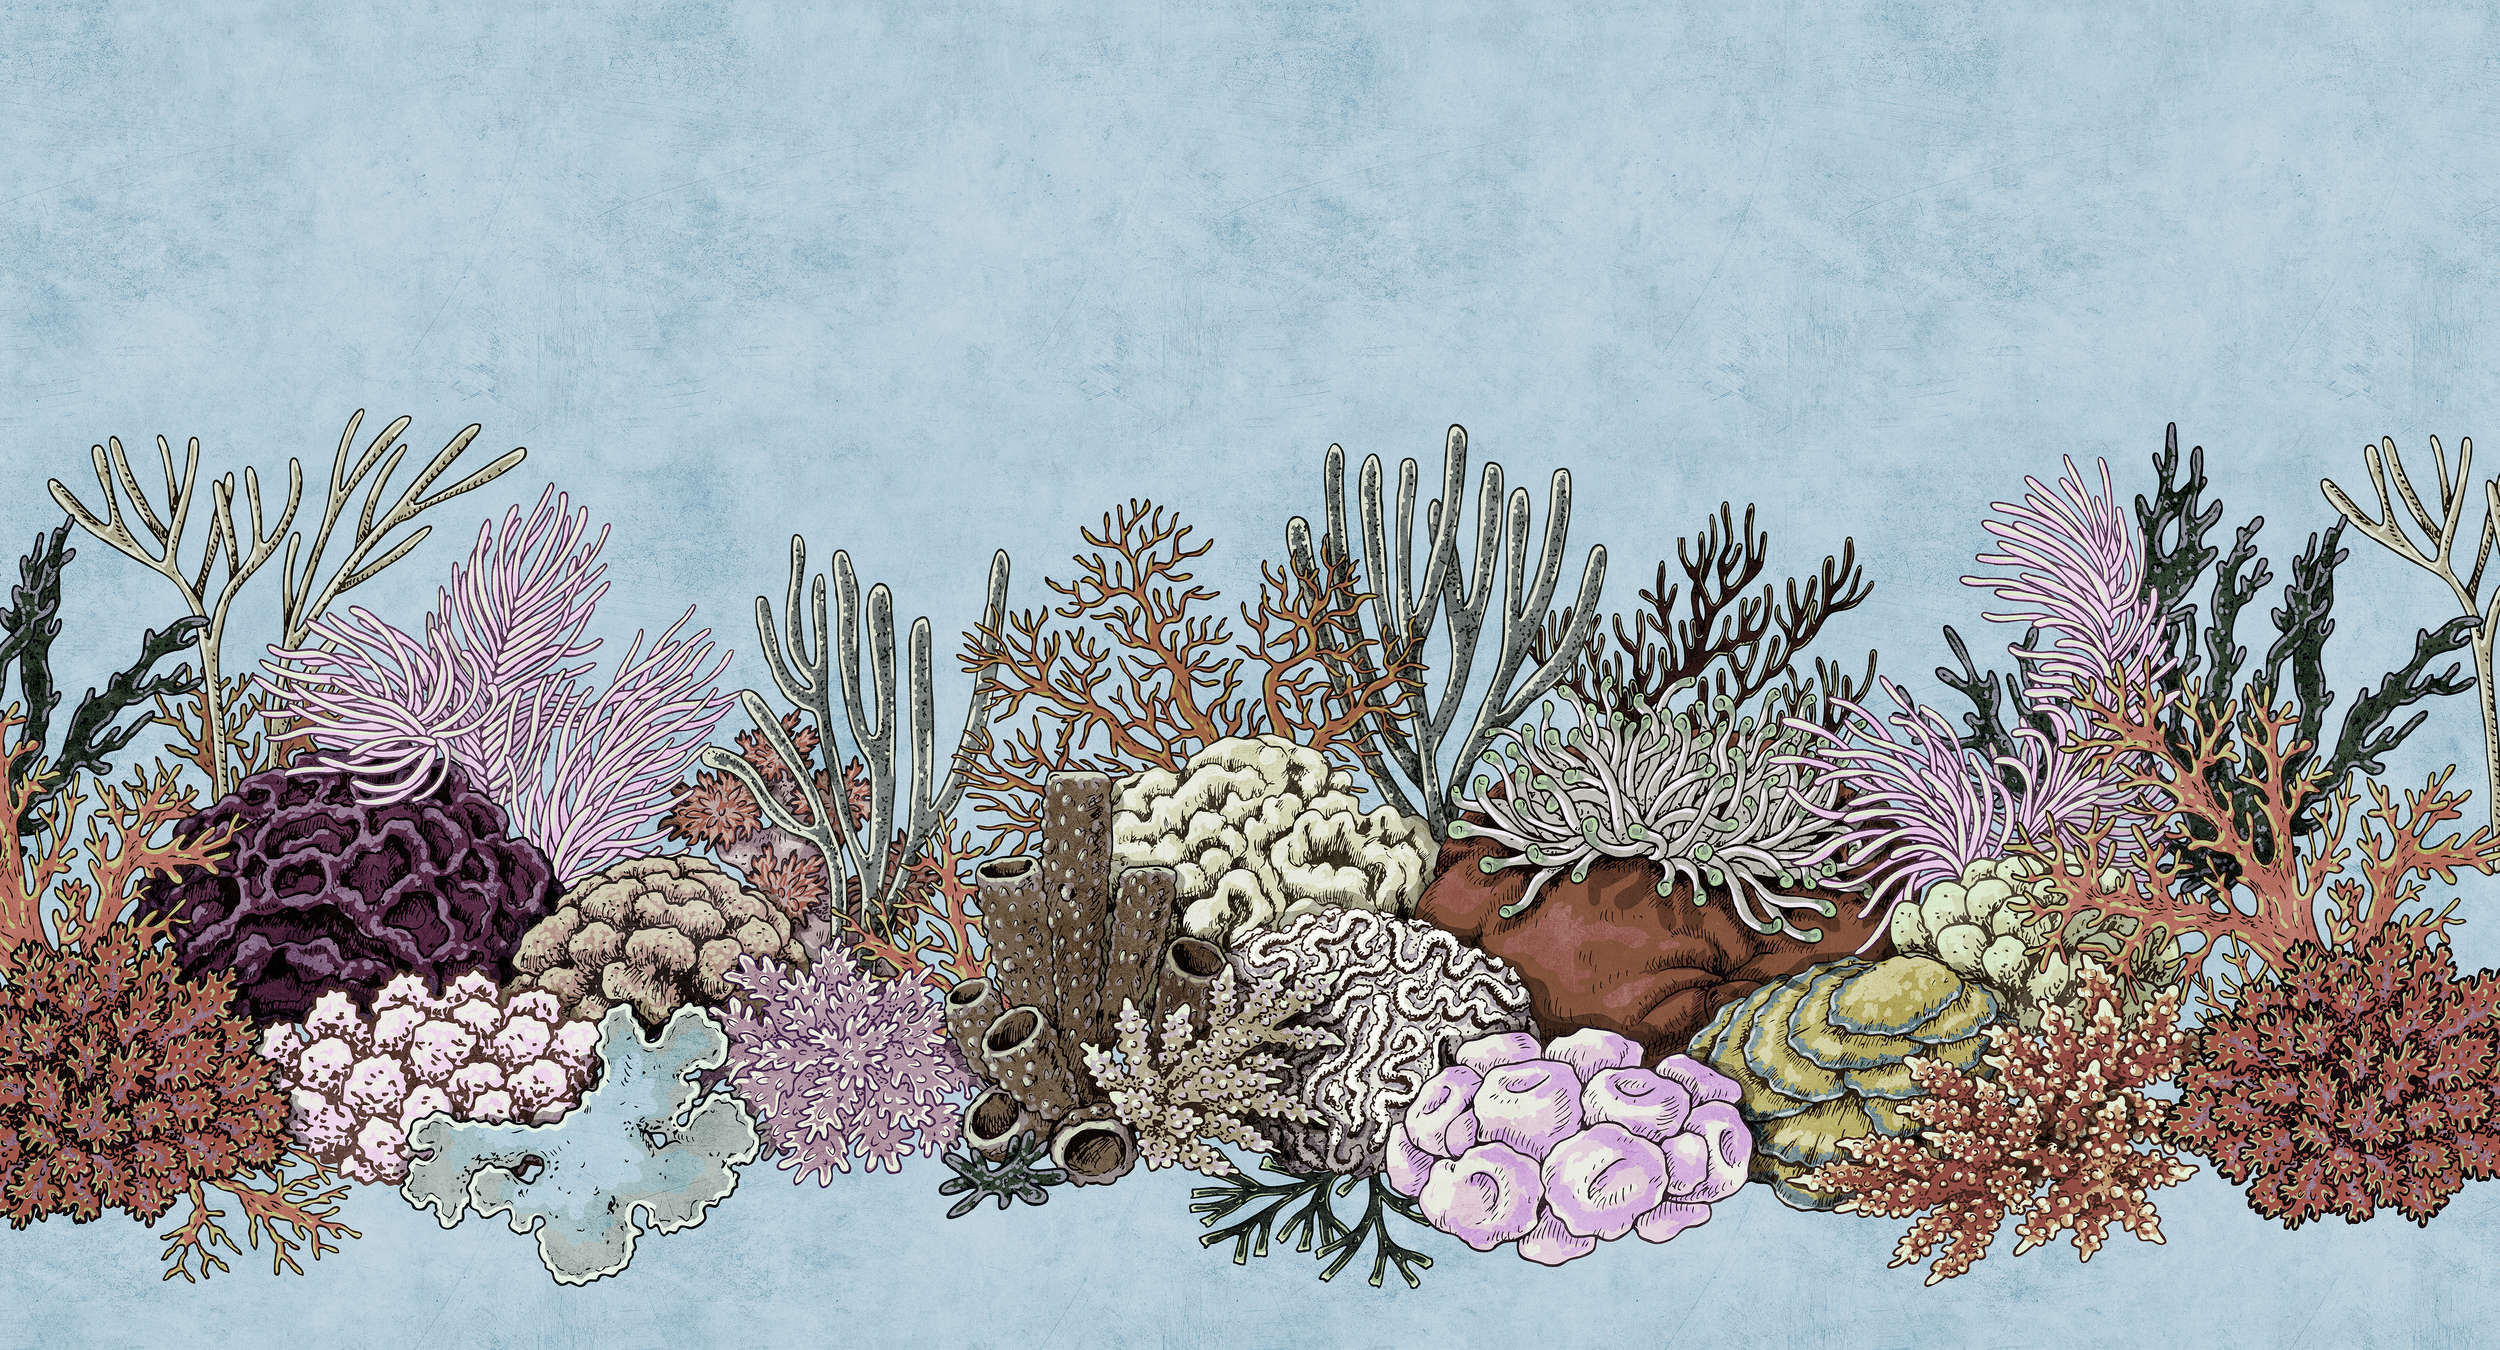             Octopus's Garden 1 - Papel pintado submarino con corales en estructura de papel secante - Azul, Rosa | Liso mate
        